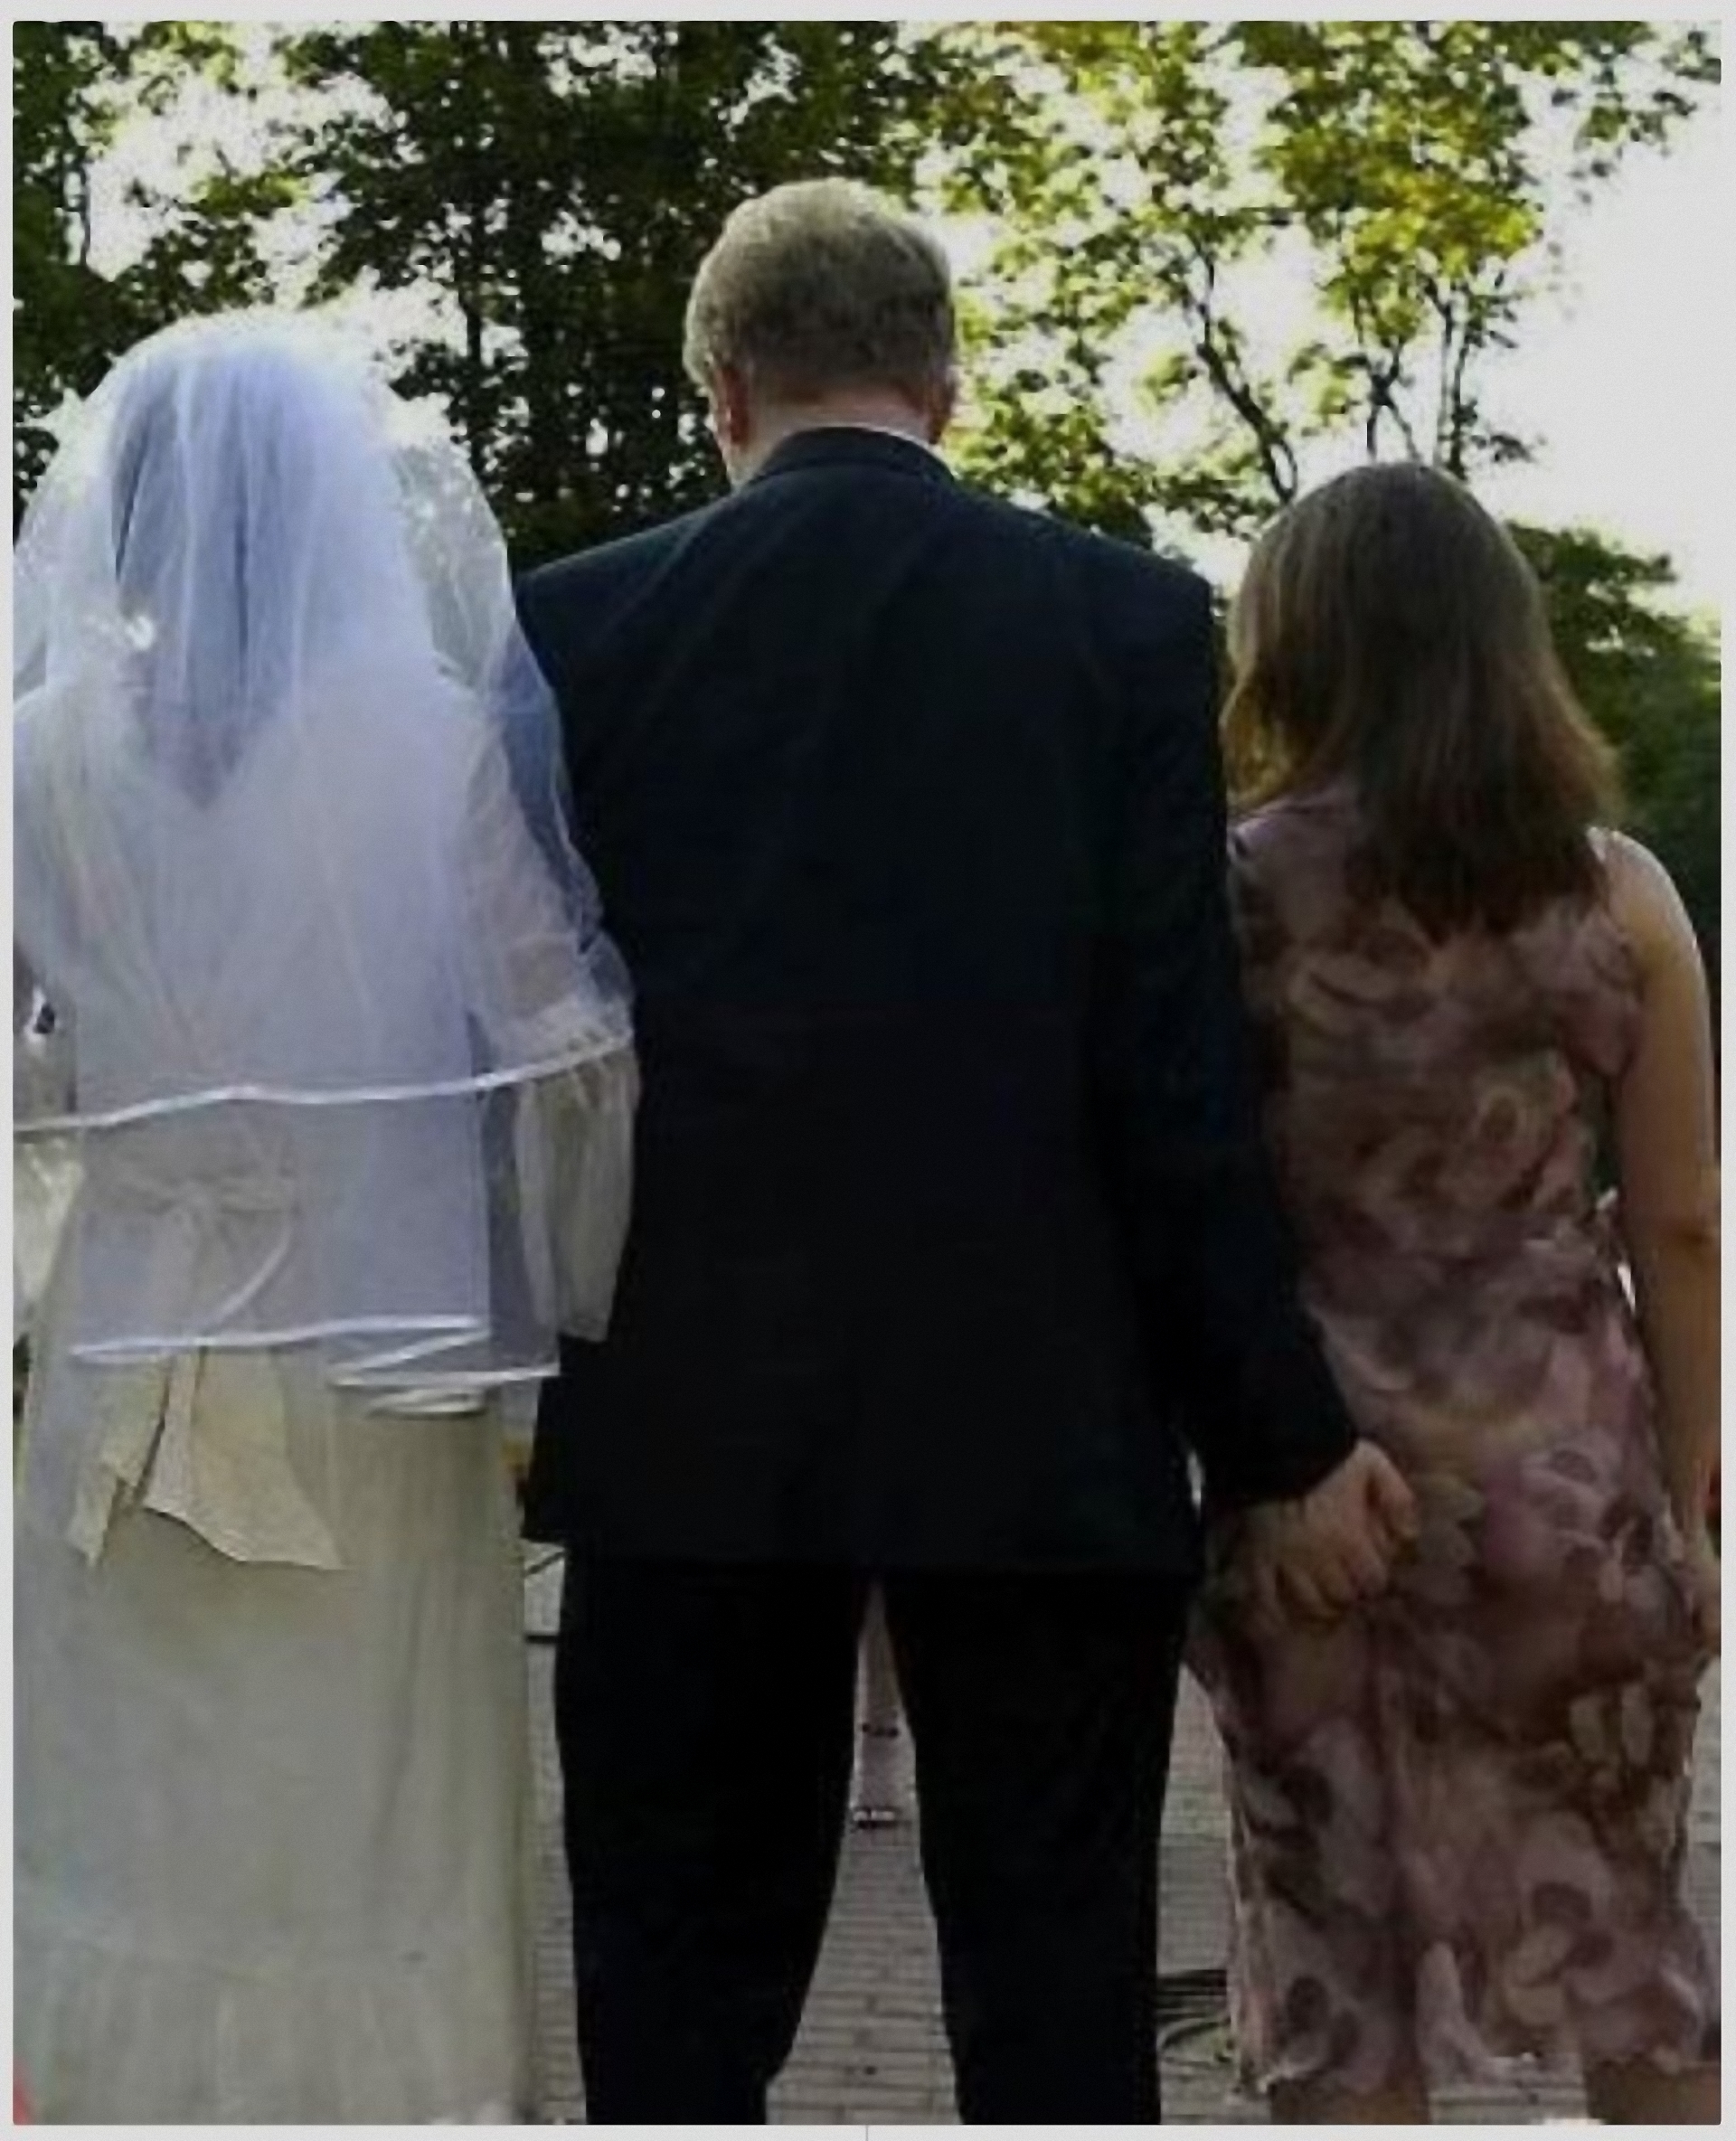 Невеста изменяет. Измена невесты в день свадьбы. Невеста изменяет со свидетелем. Невеста изменила жениху. Измена невесты жениху видео